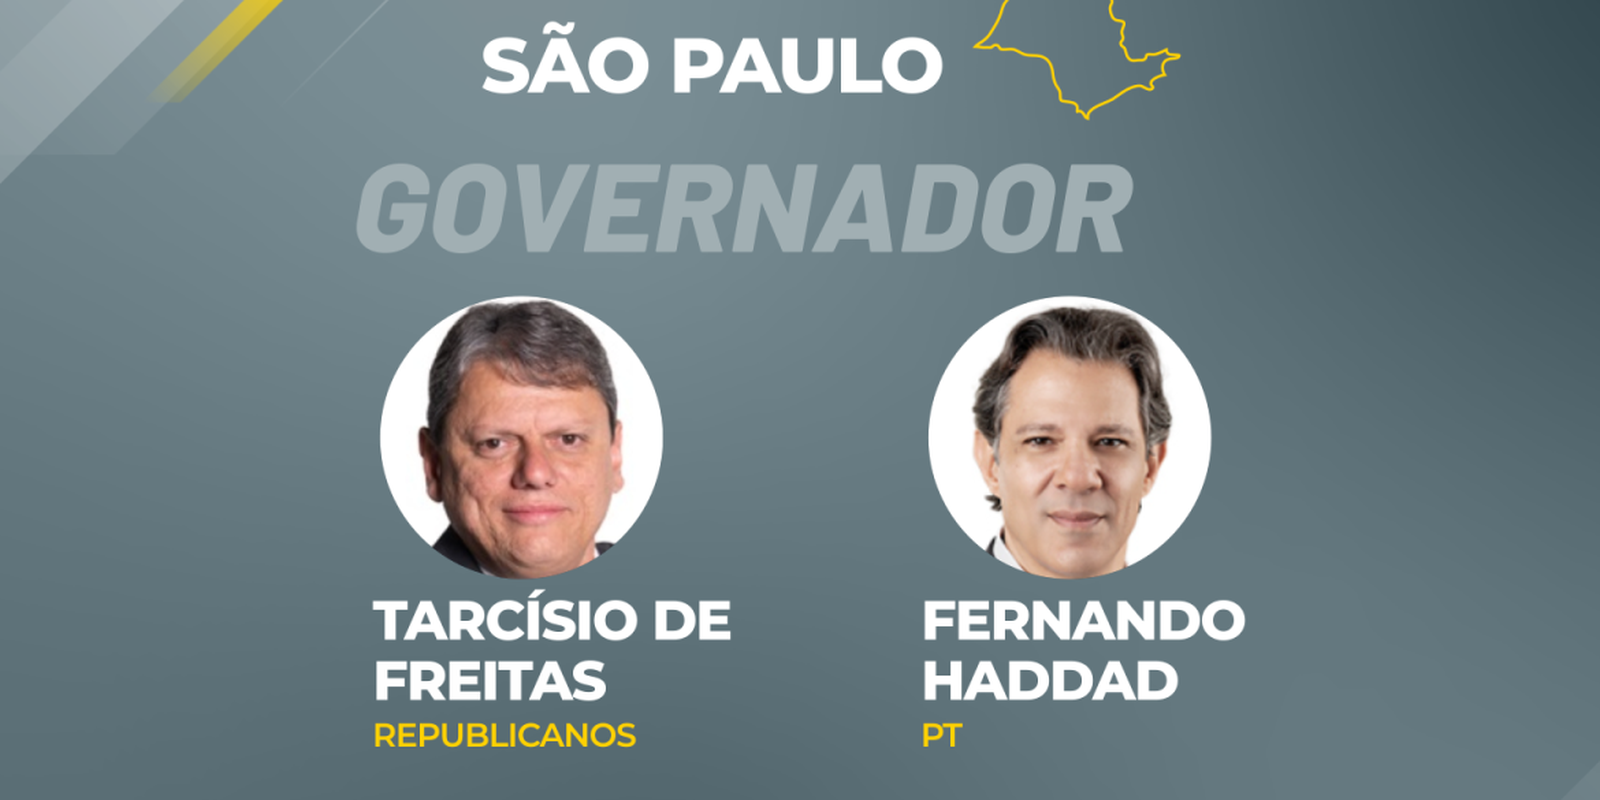 Dans SP, Tarcísio apparaît en premier avec 58% de votes valides